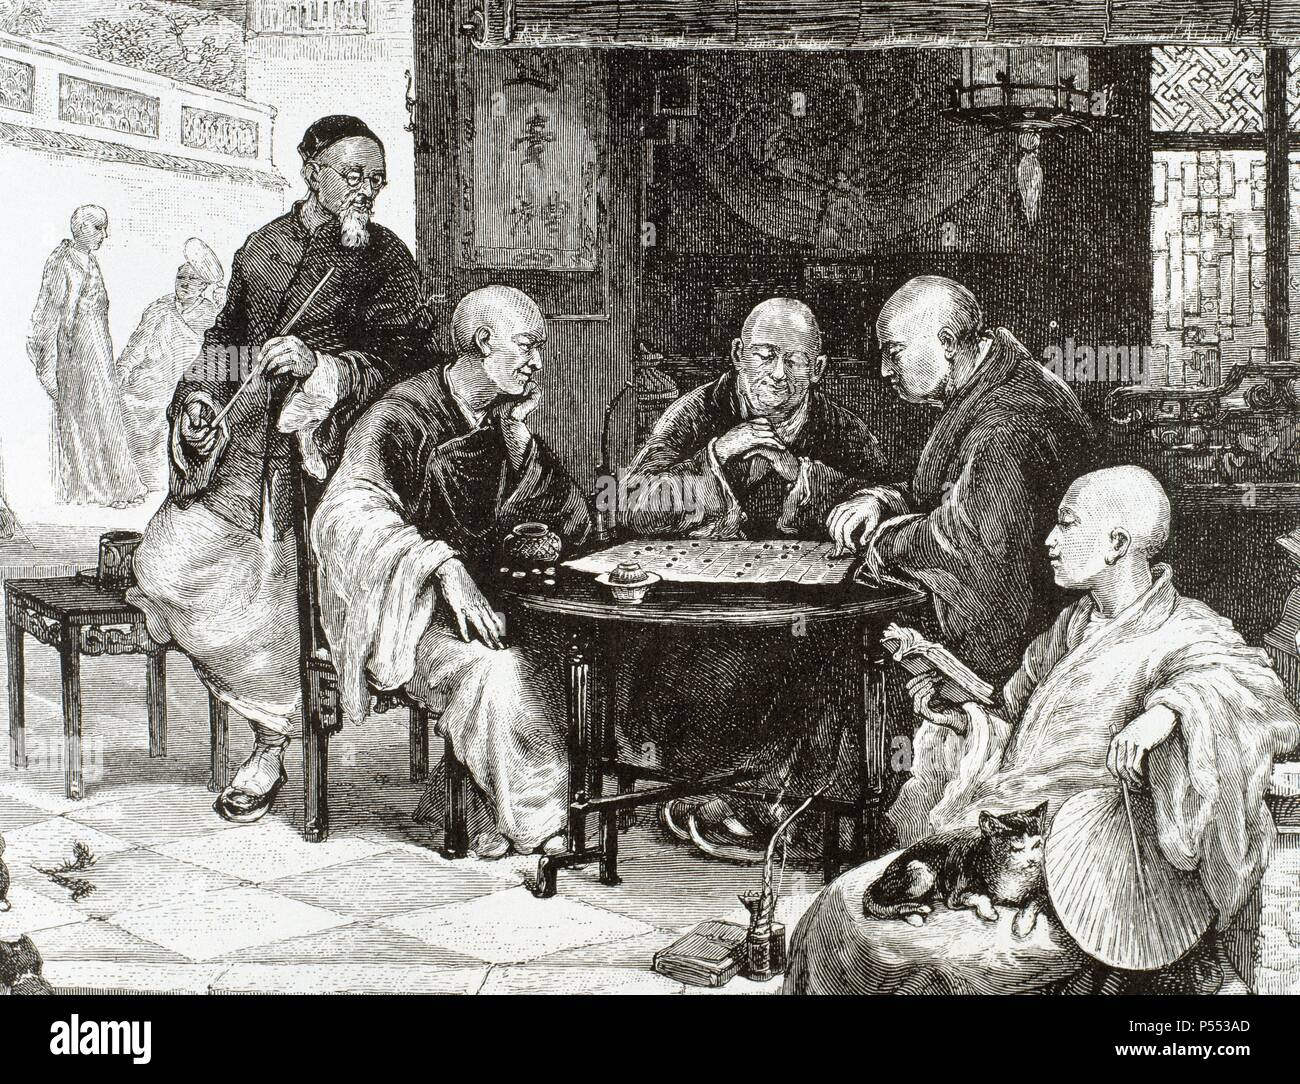 HISTORIA DE CHINA. Tipos de clase media jugando a damas en una taberna.  Grabado del siglo XIX Fotografía de stock - Alamy